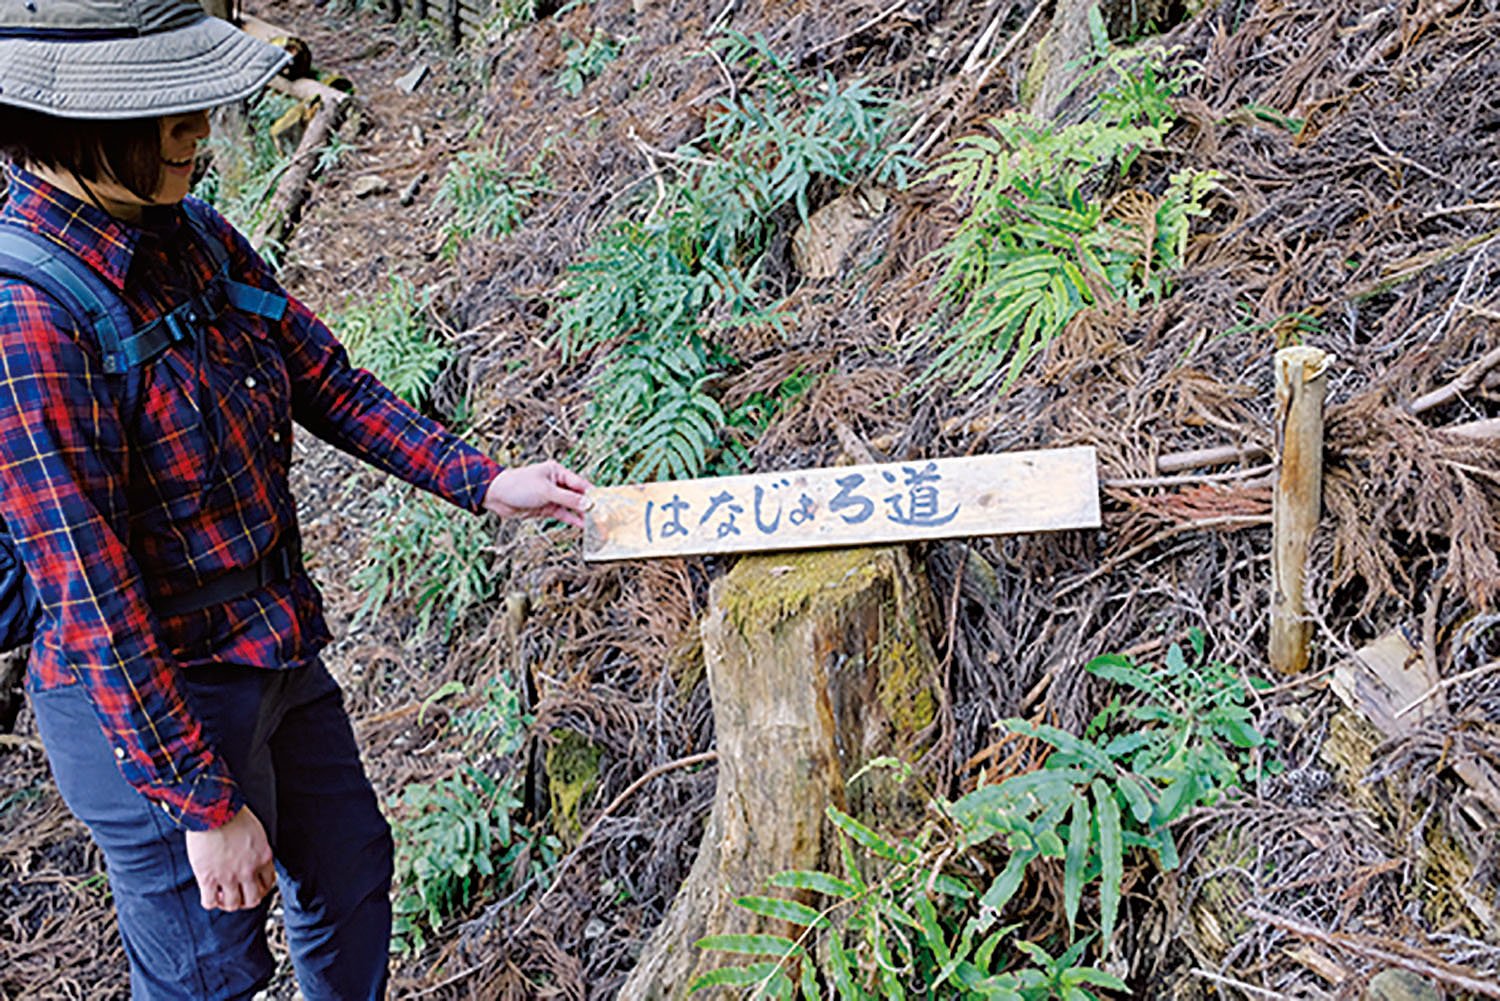 ヒネゴ沢沿いの登山道には手書きの道標が何箇所もある。